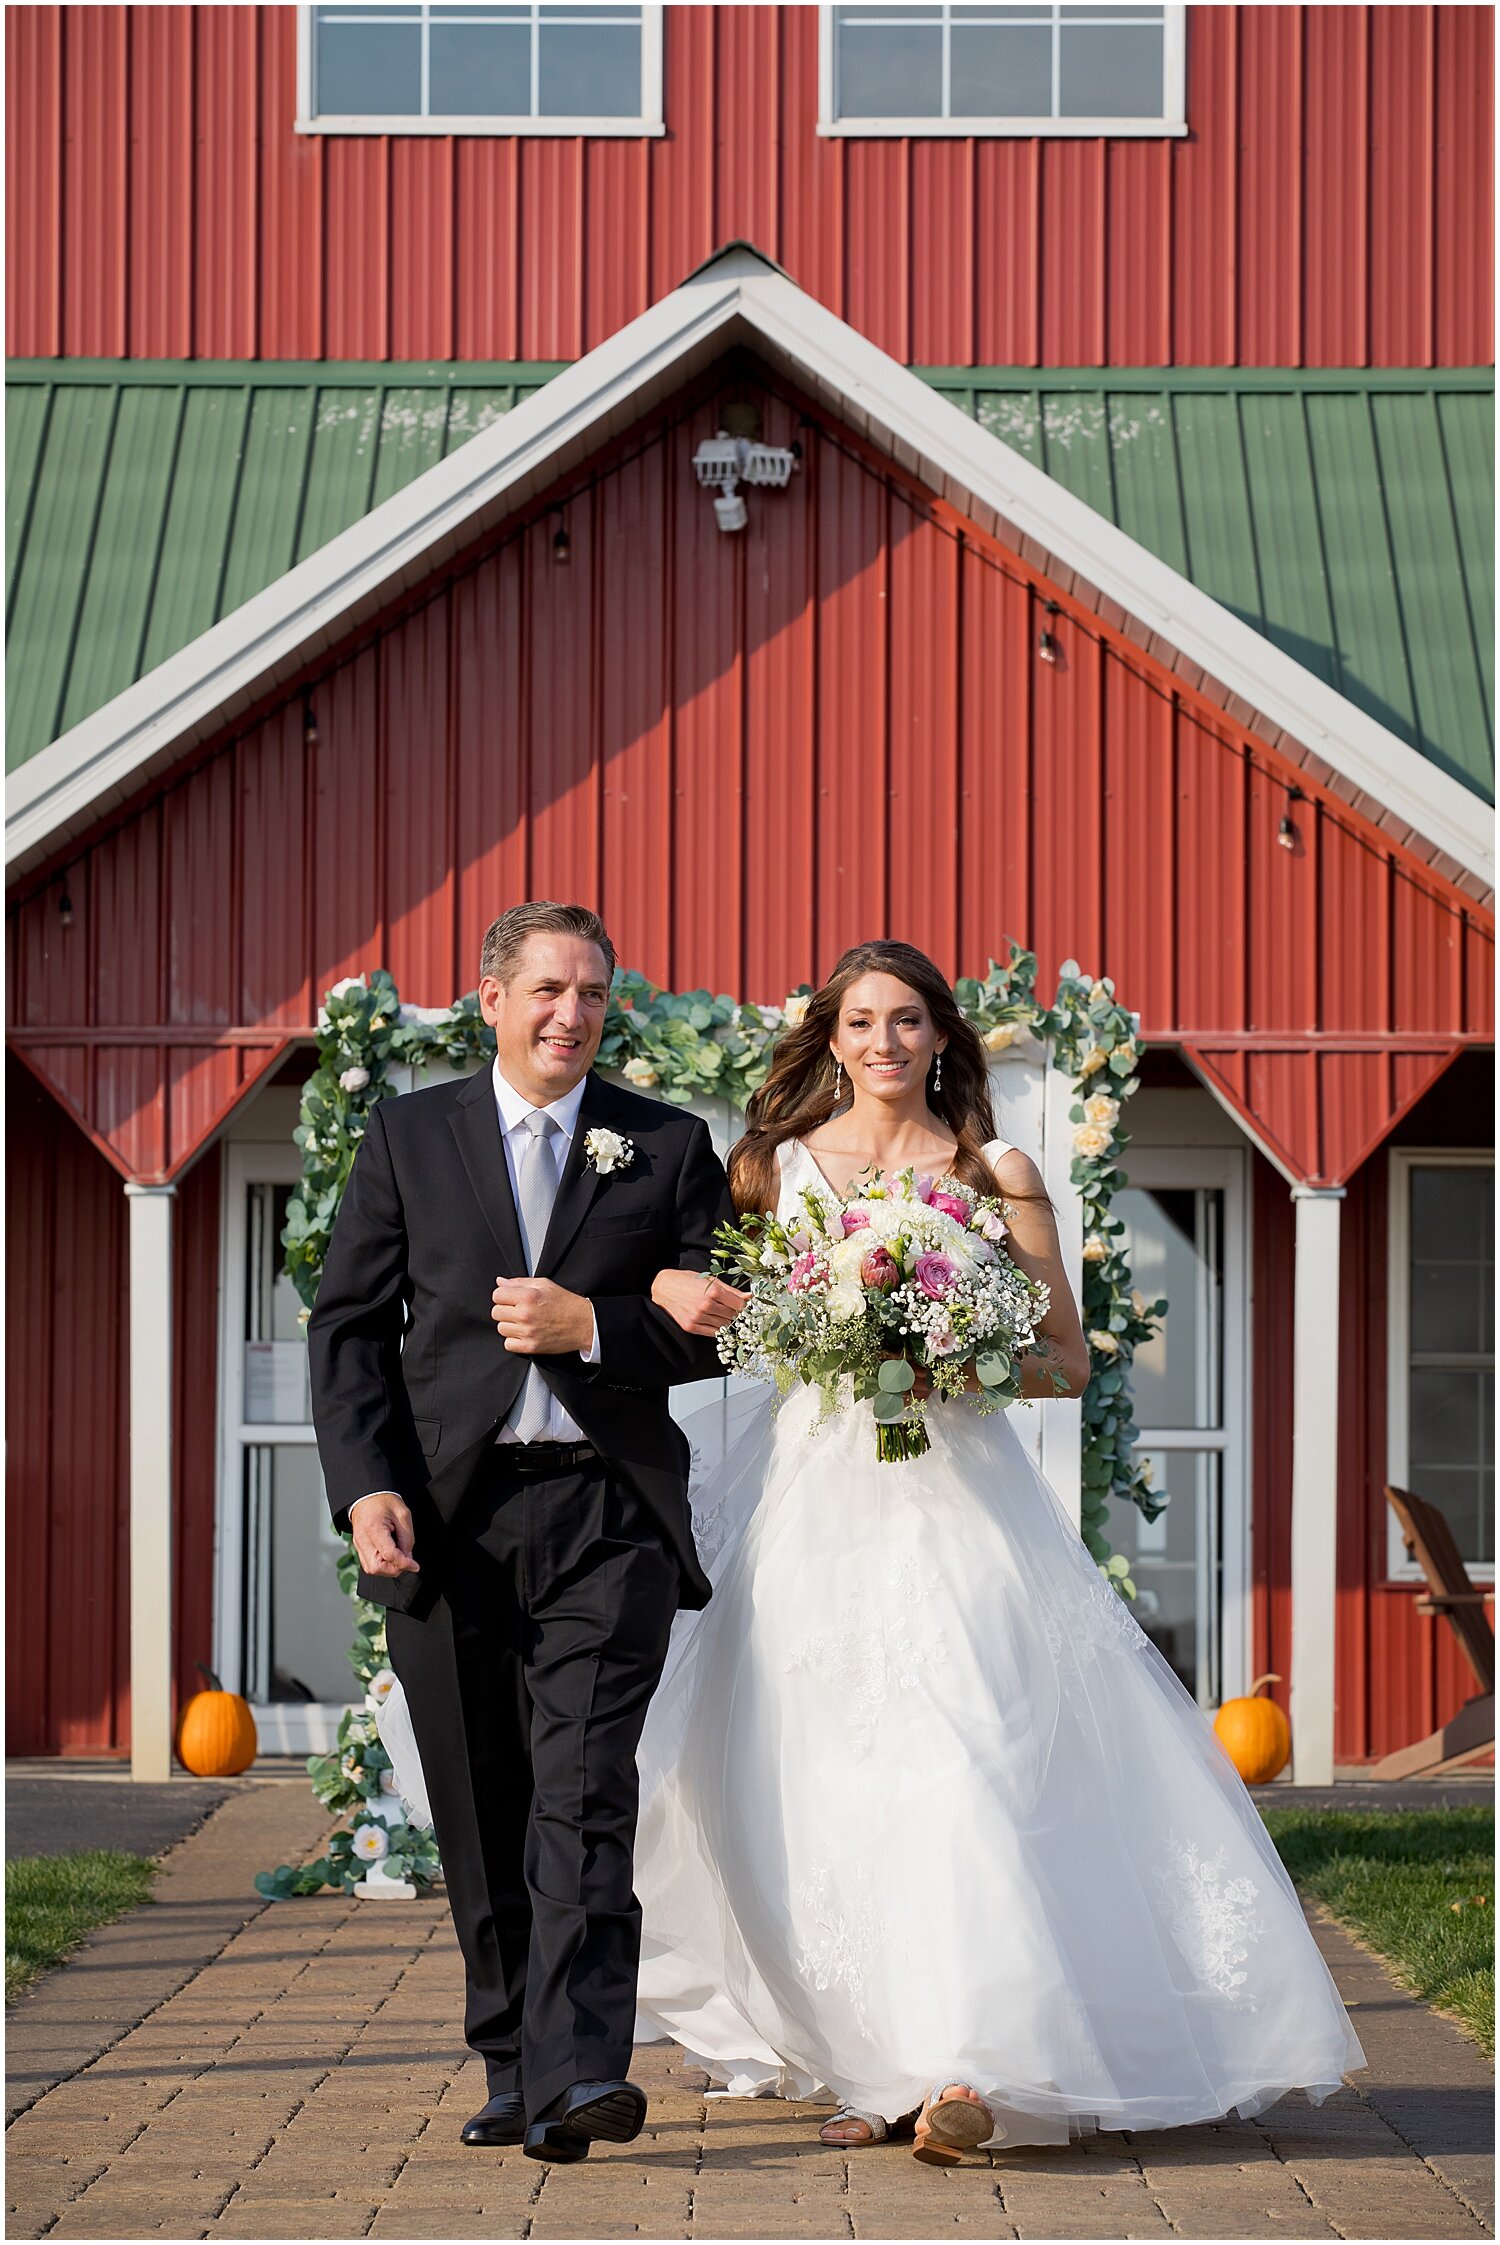 Chaska Minnesota Wedding - The Outpost Center_3993.jpg